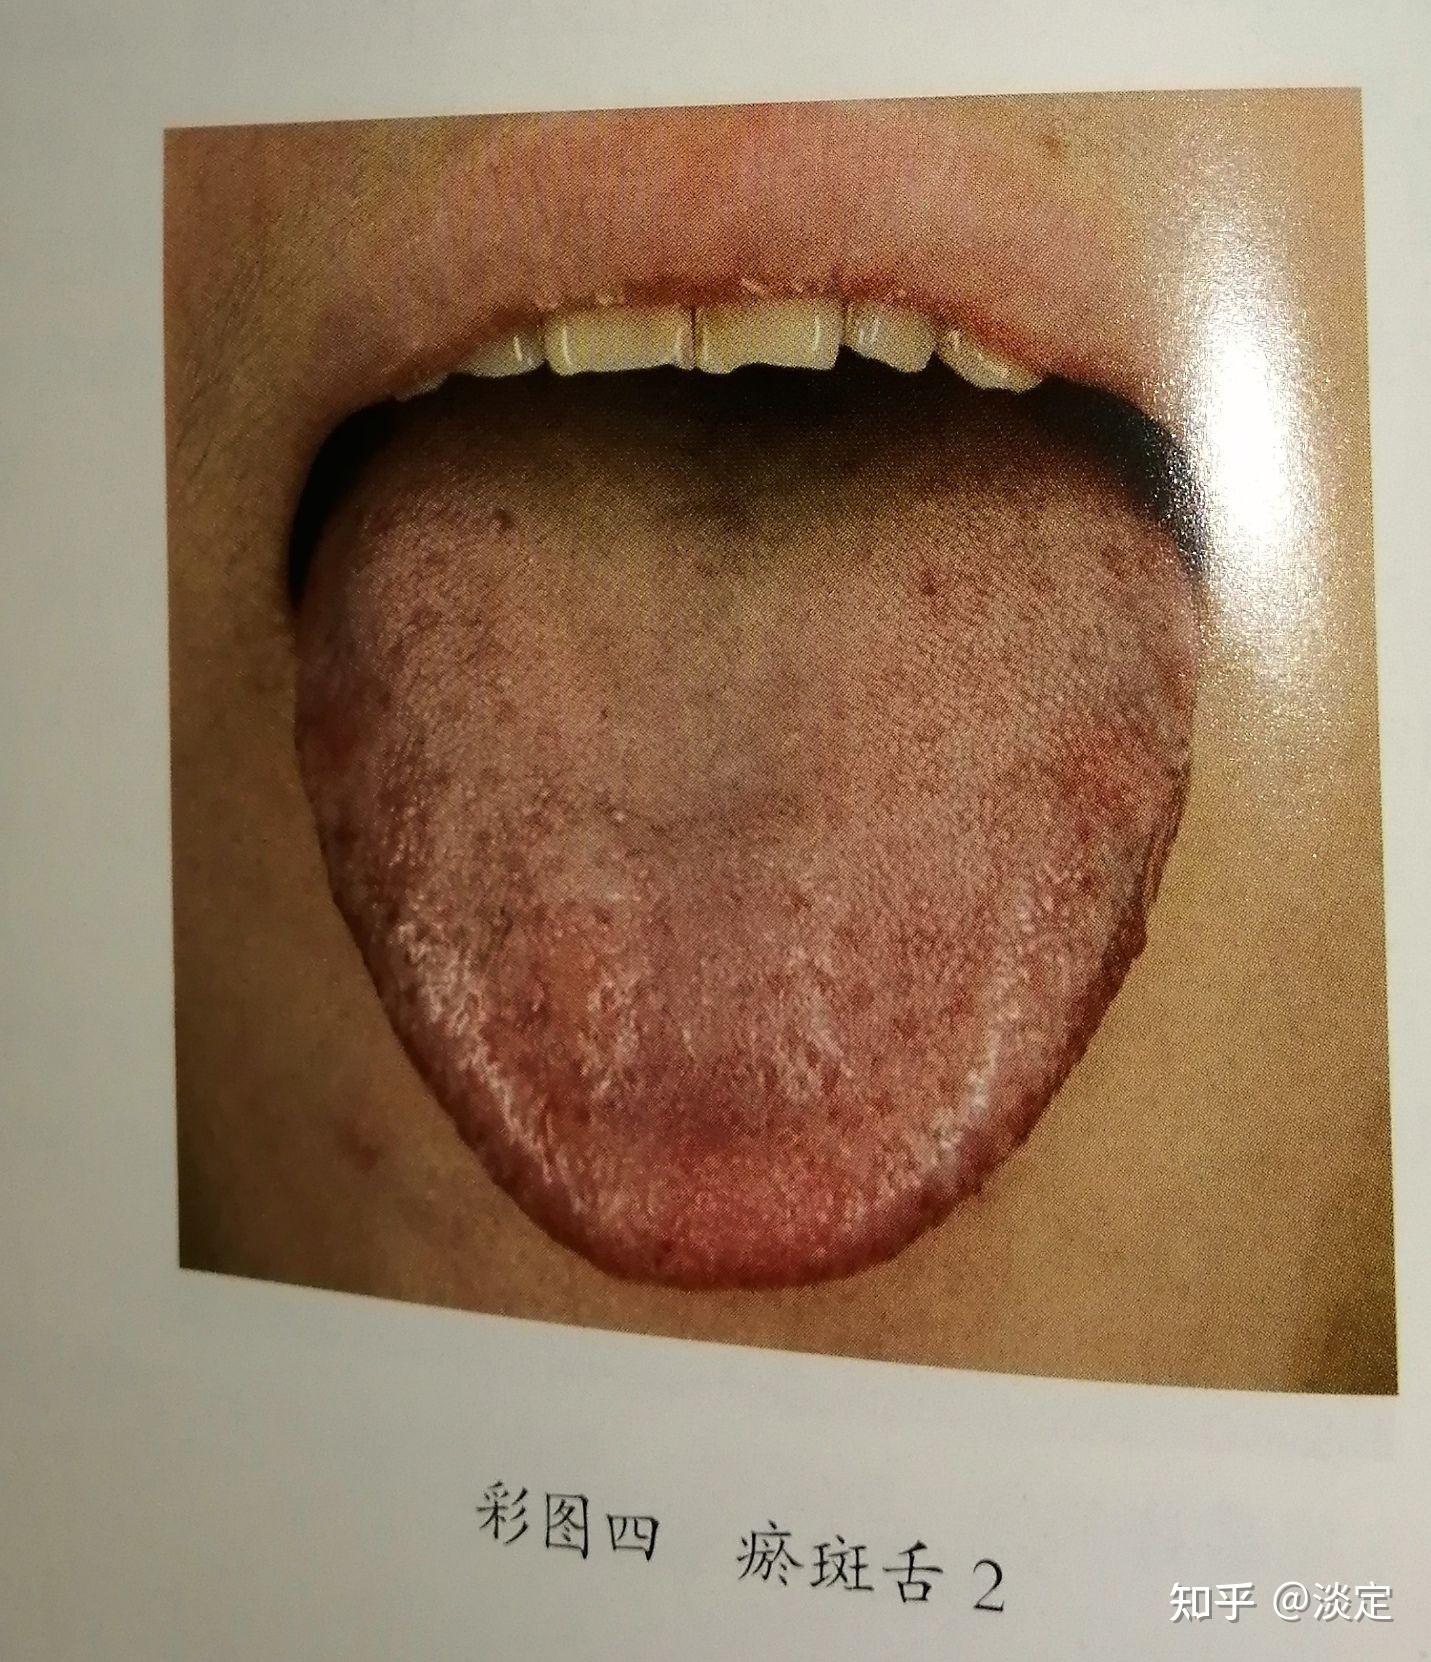 舌头有瘀点瘀斑图片-图库-五毛网